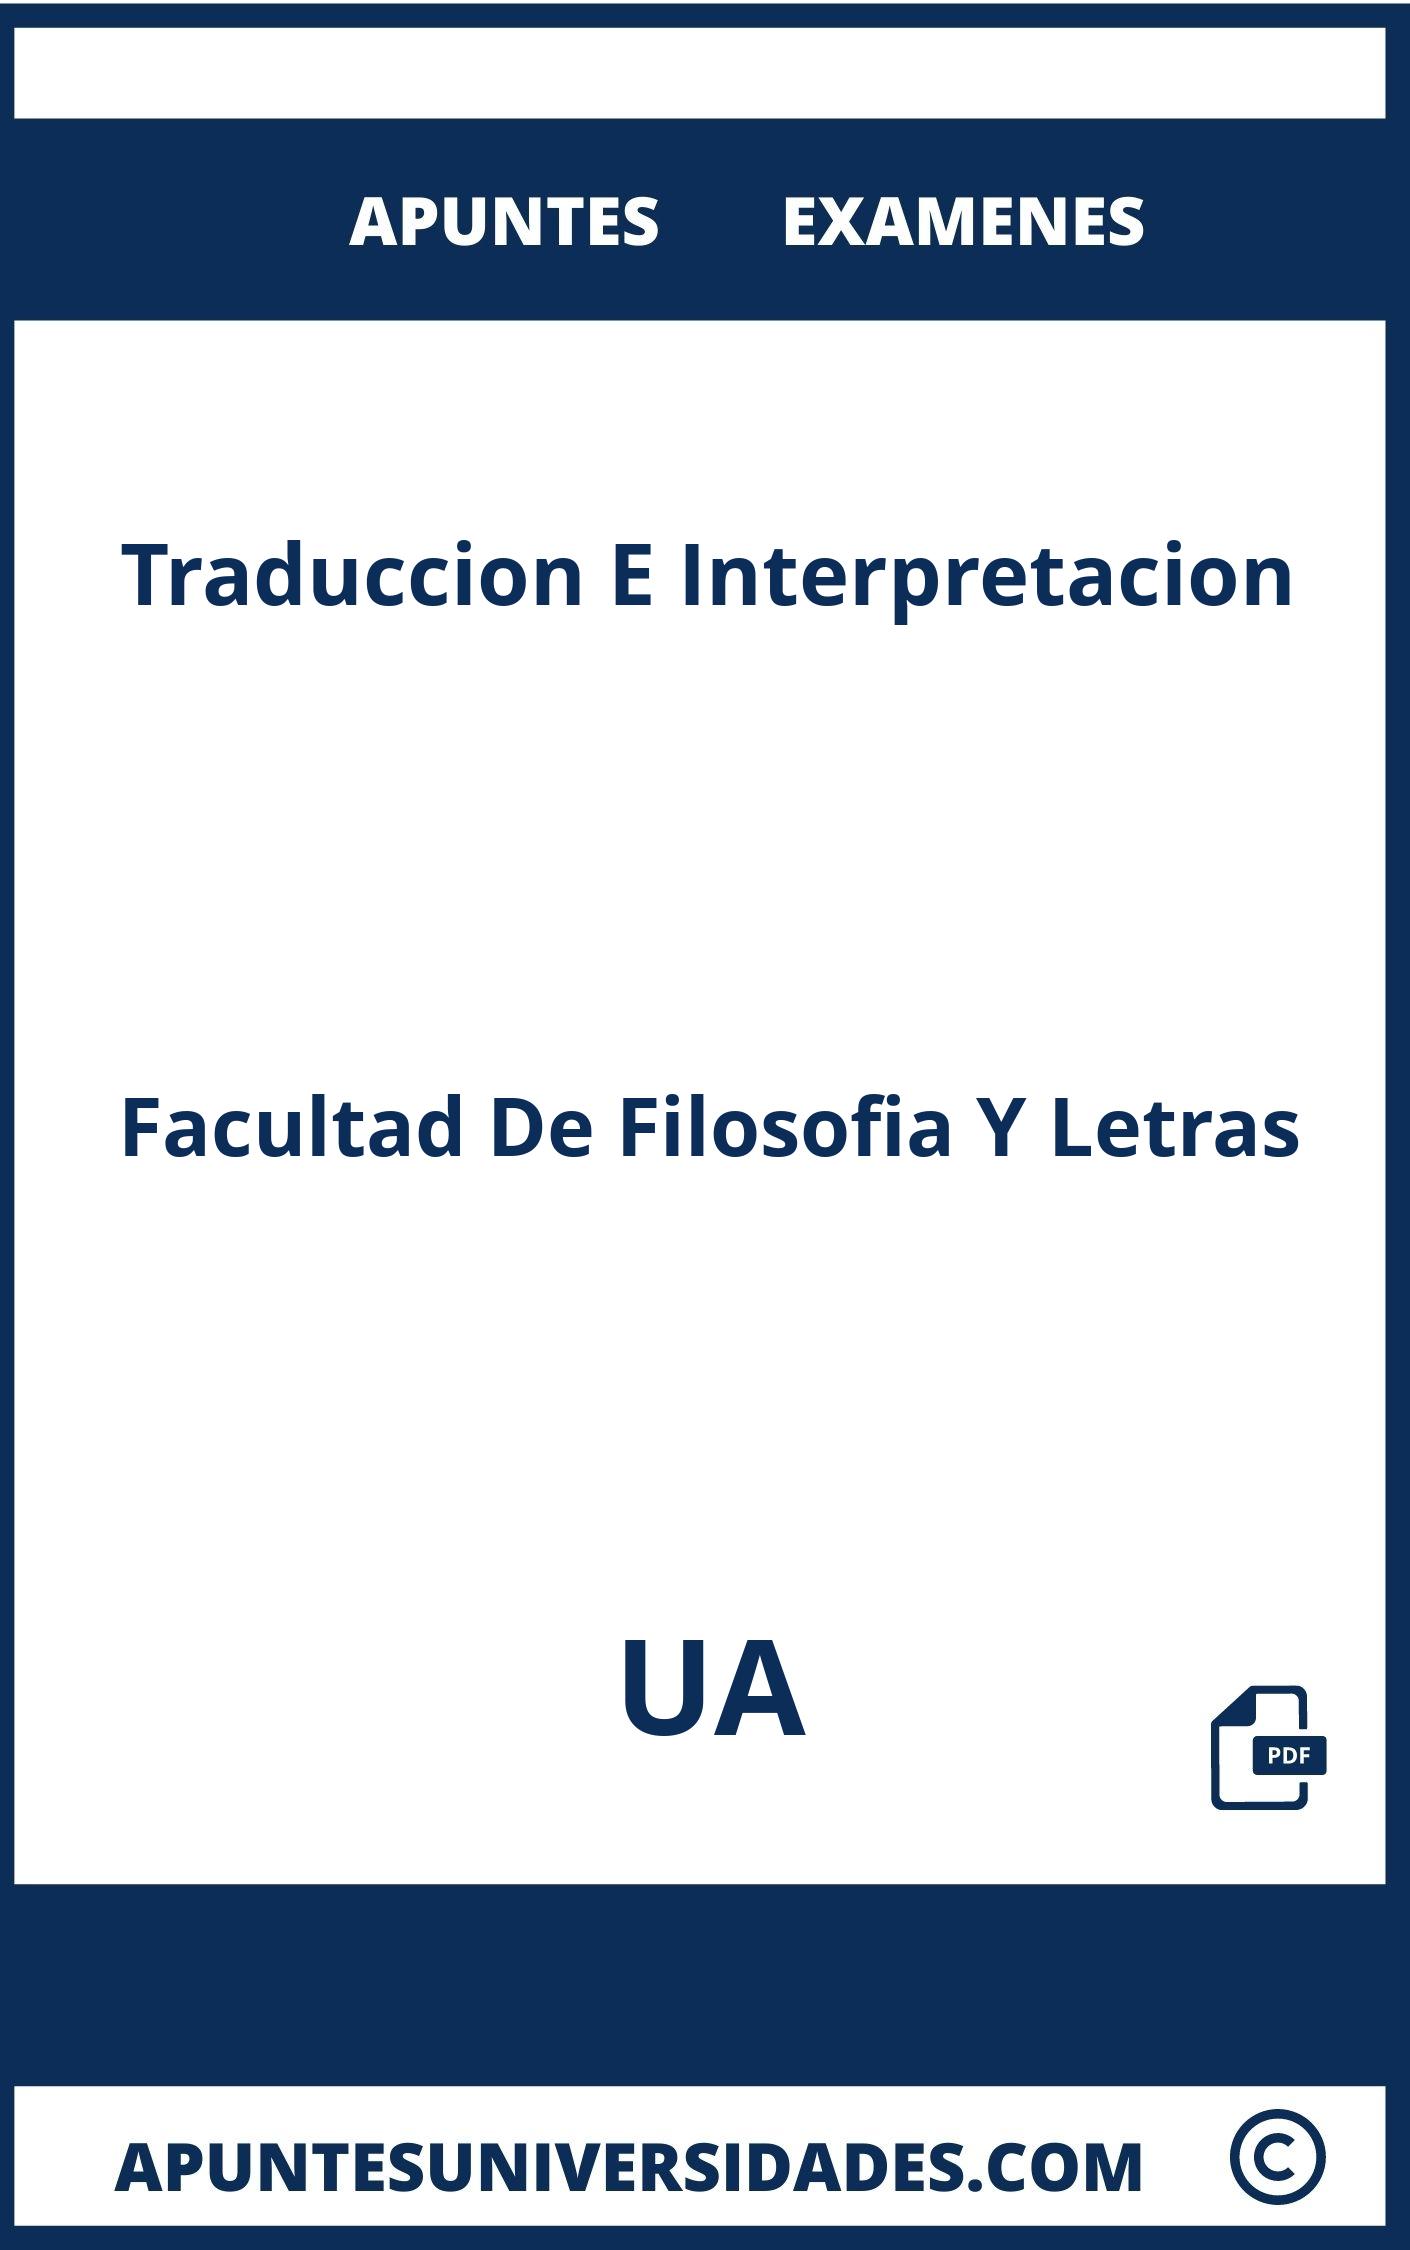 Apuntes y Examenes de Traduccion E Interpretacion UA